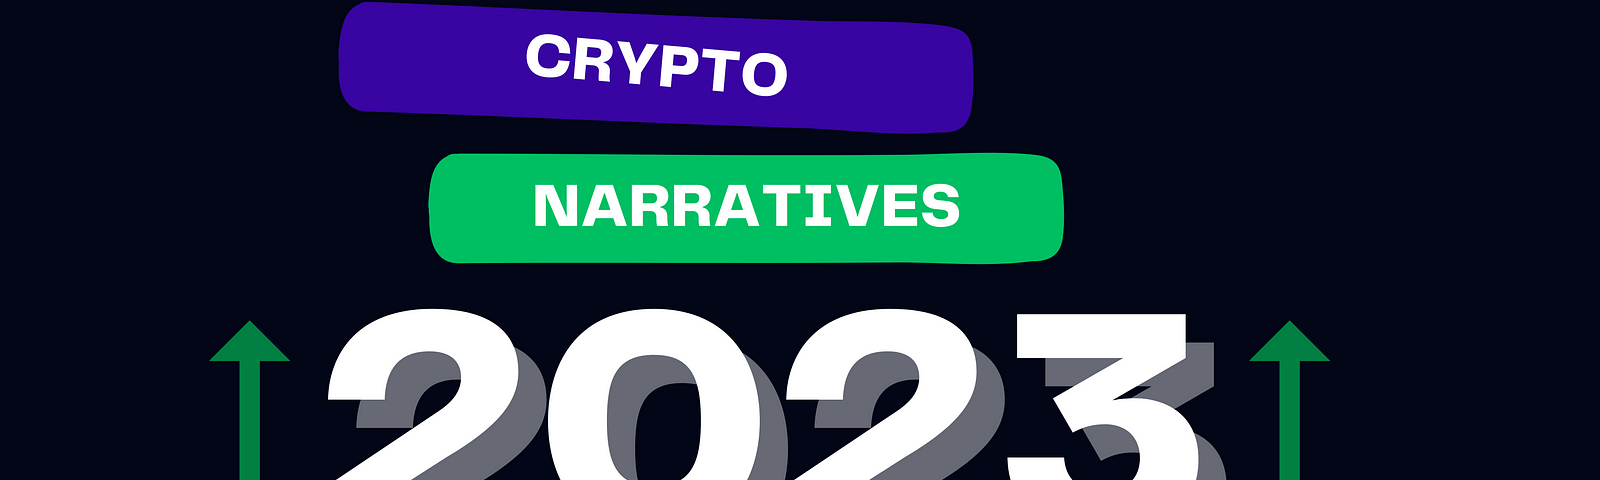 Crypto Narratives 2023